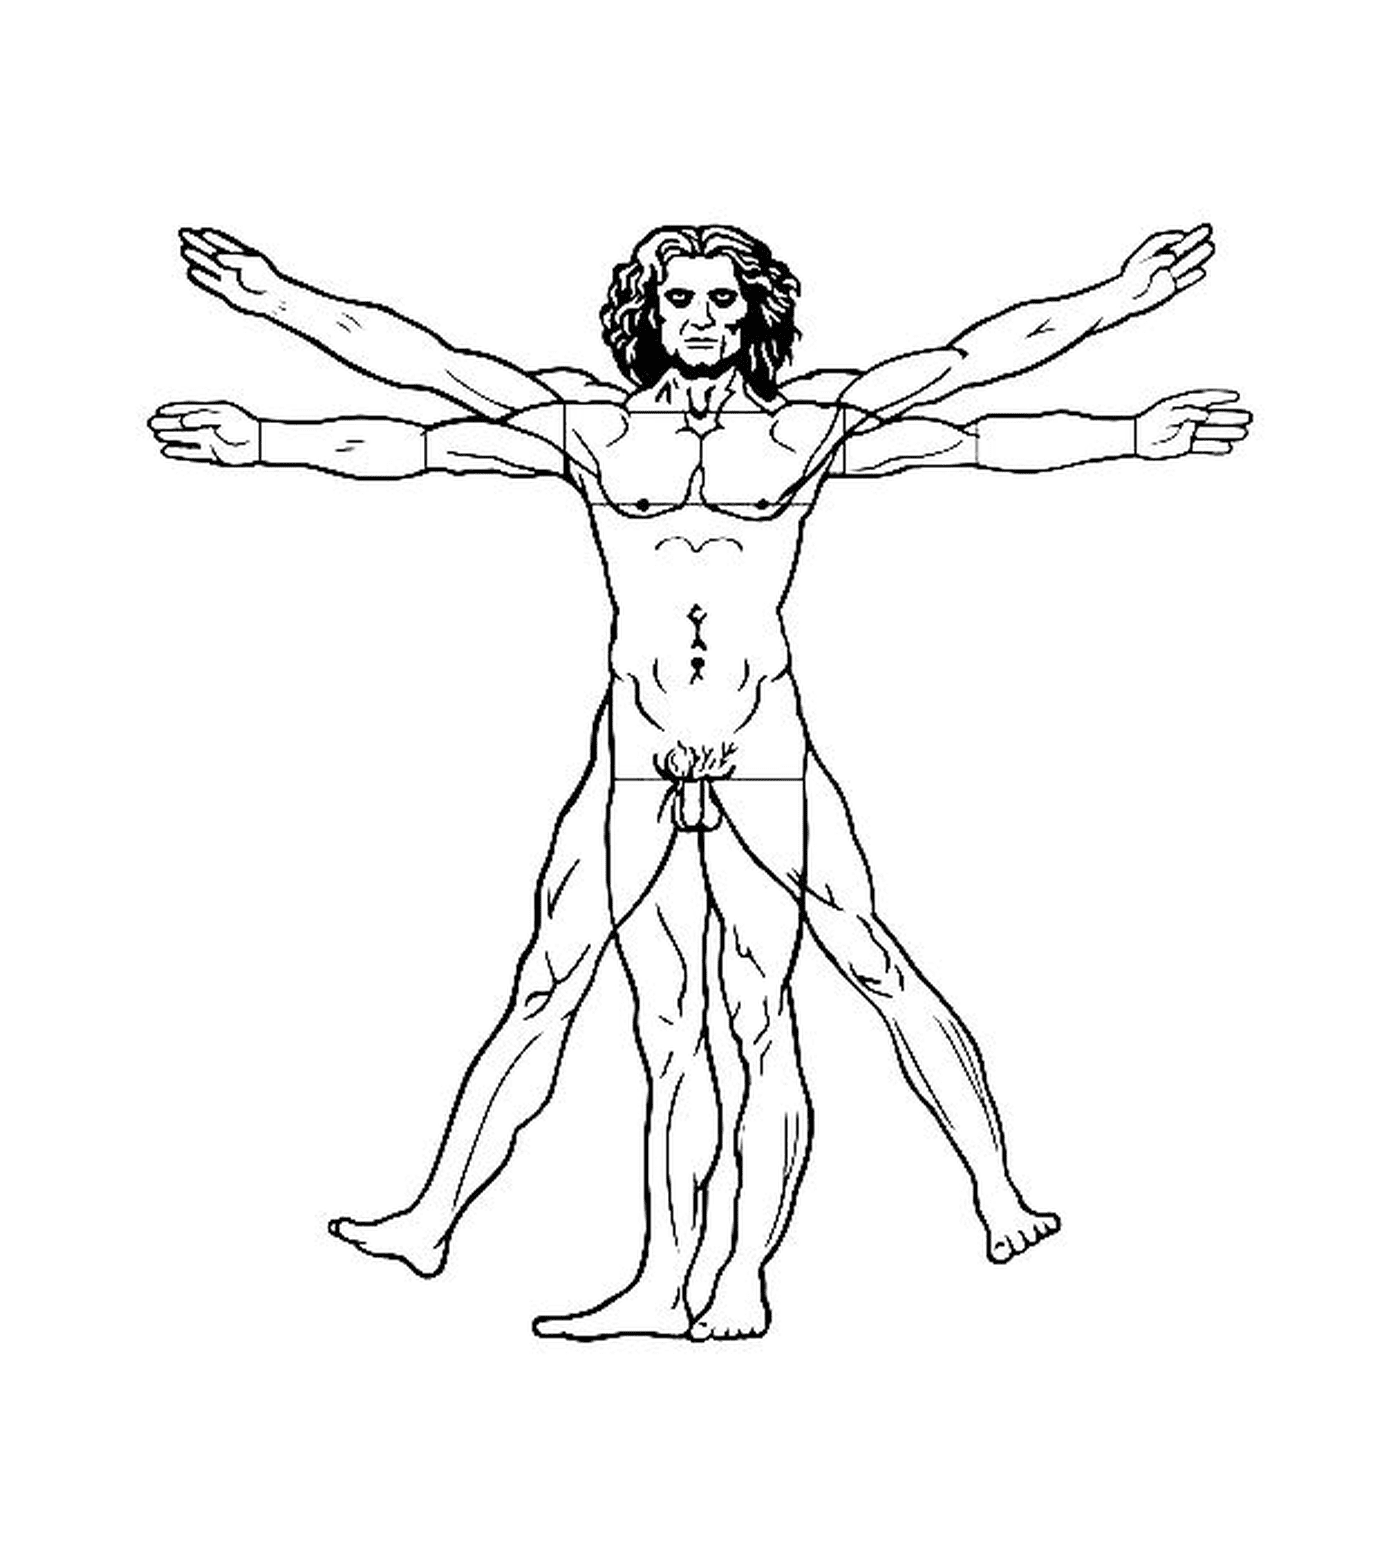  ein Mann mit ausgestreckten Armen nach Leonardo da Vincis vitruvianischem Mann 